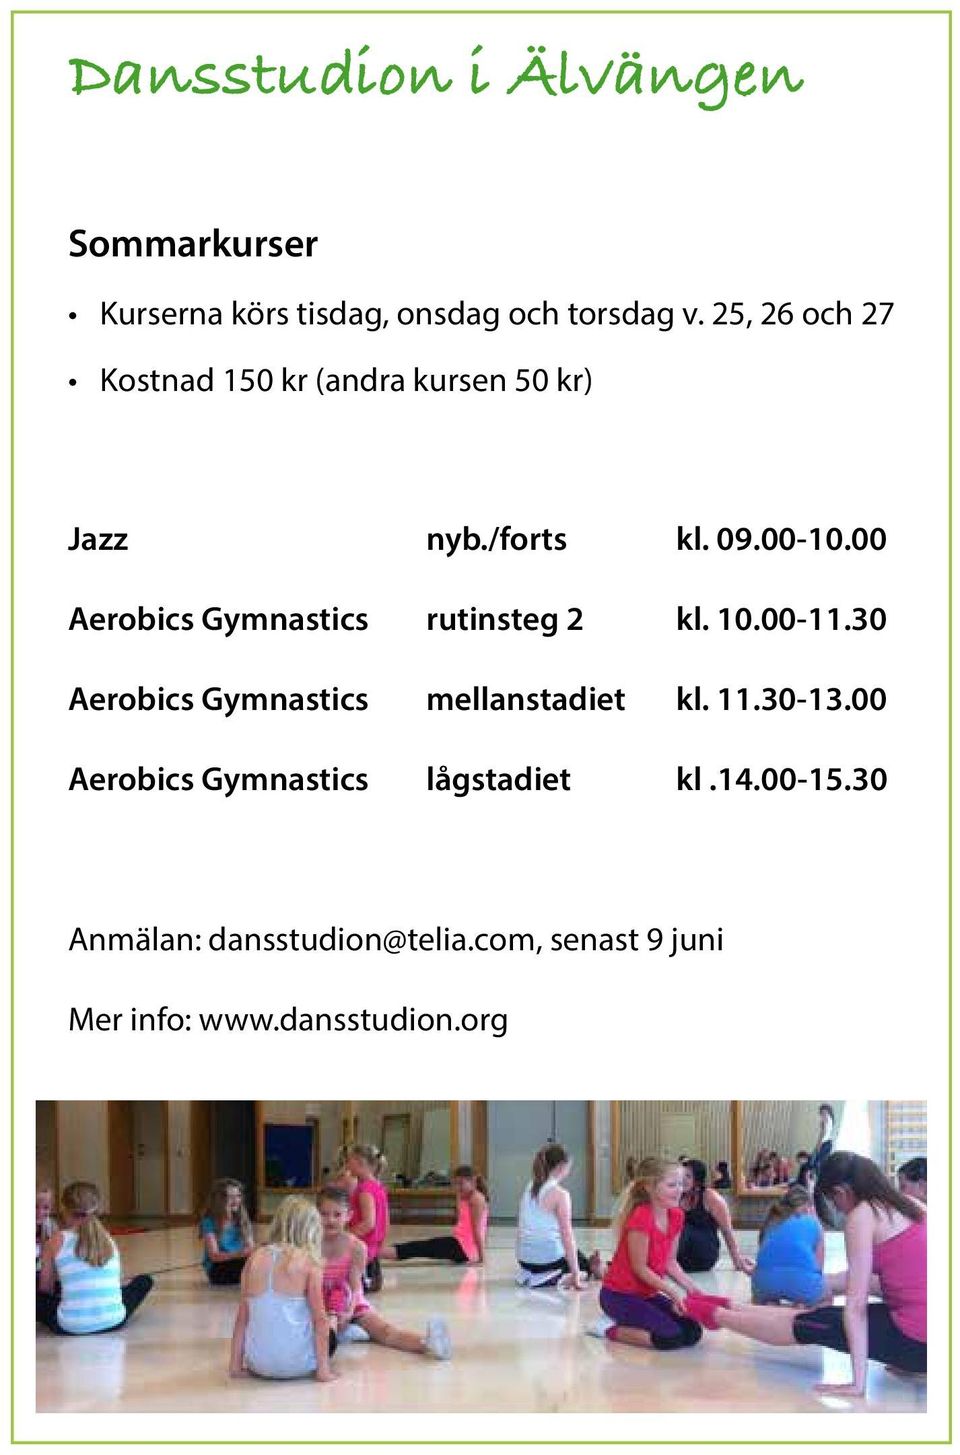 10.00-11.30 Aerobics Gymnastics mellanstadiet kl. 11.30-13.00 Aerobics Gymnastics lågstadiet kl.14.00-15.